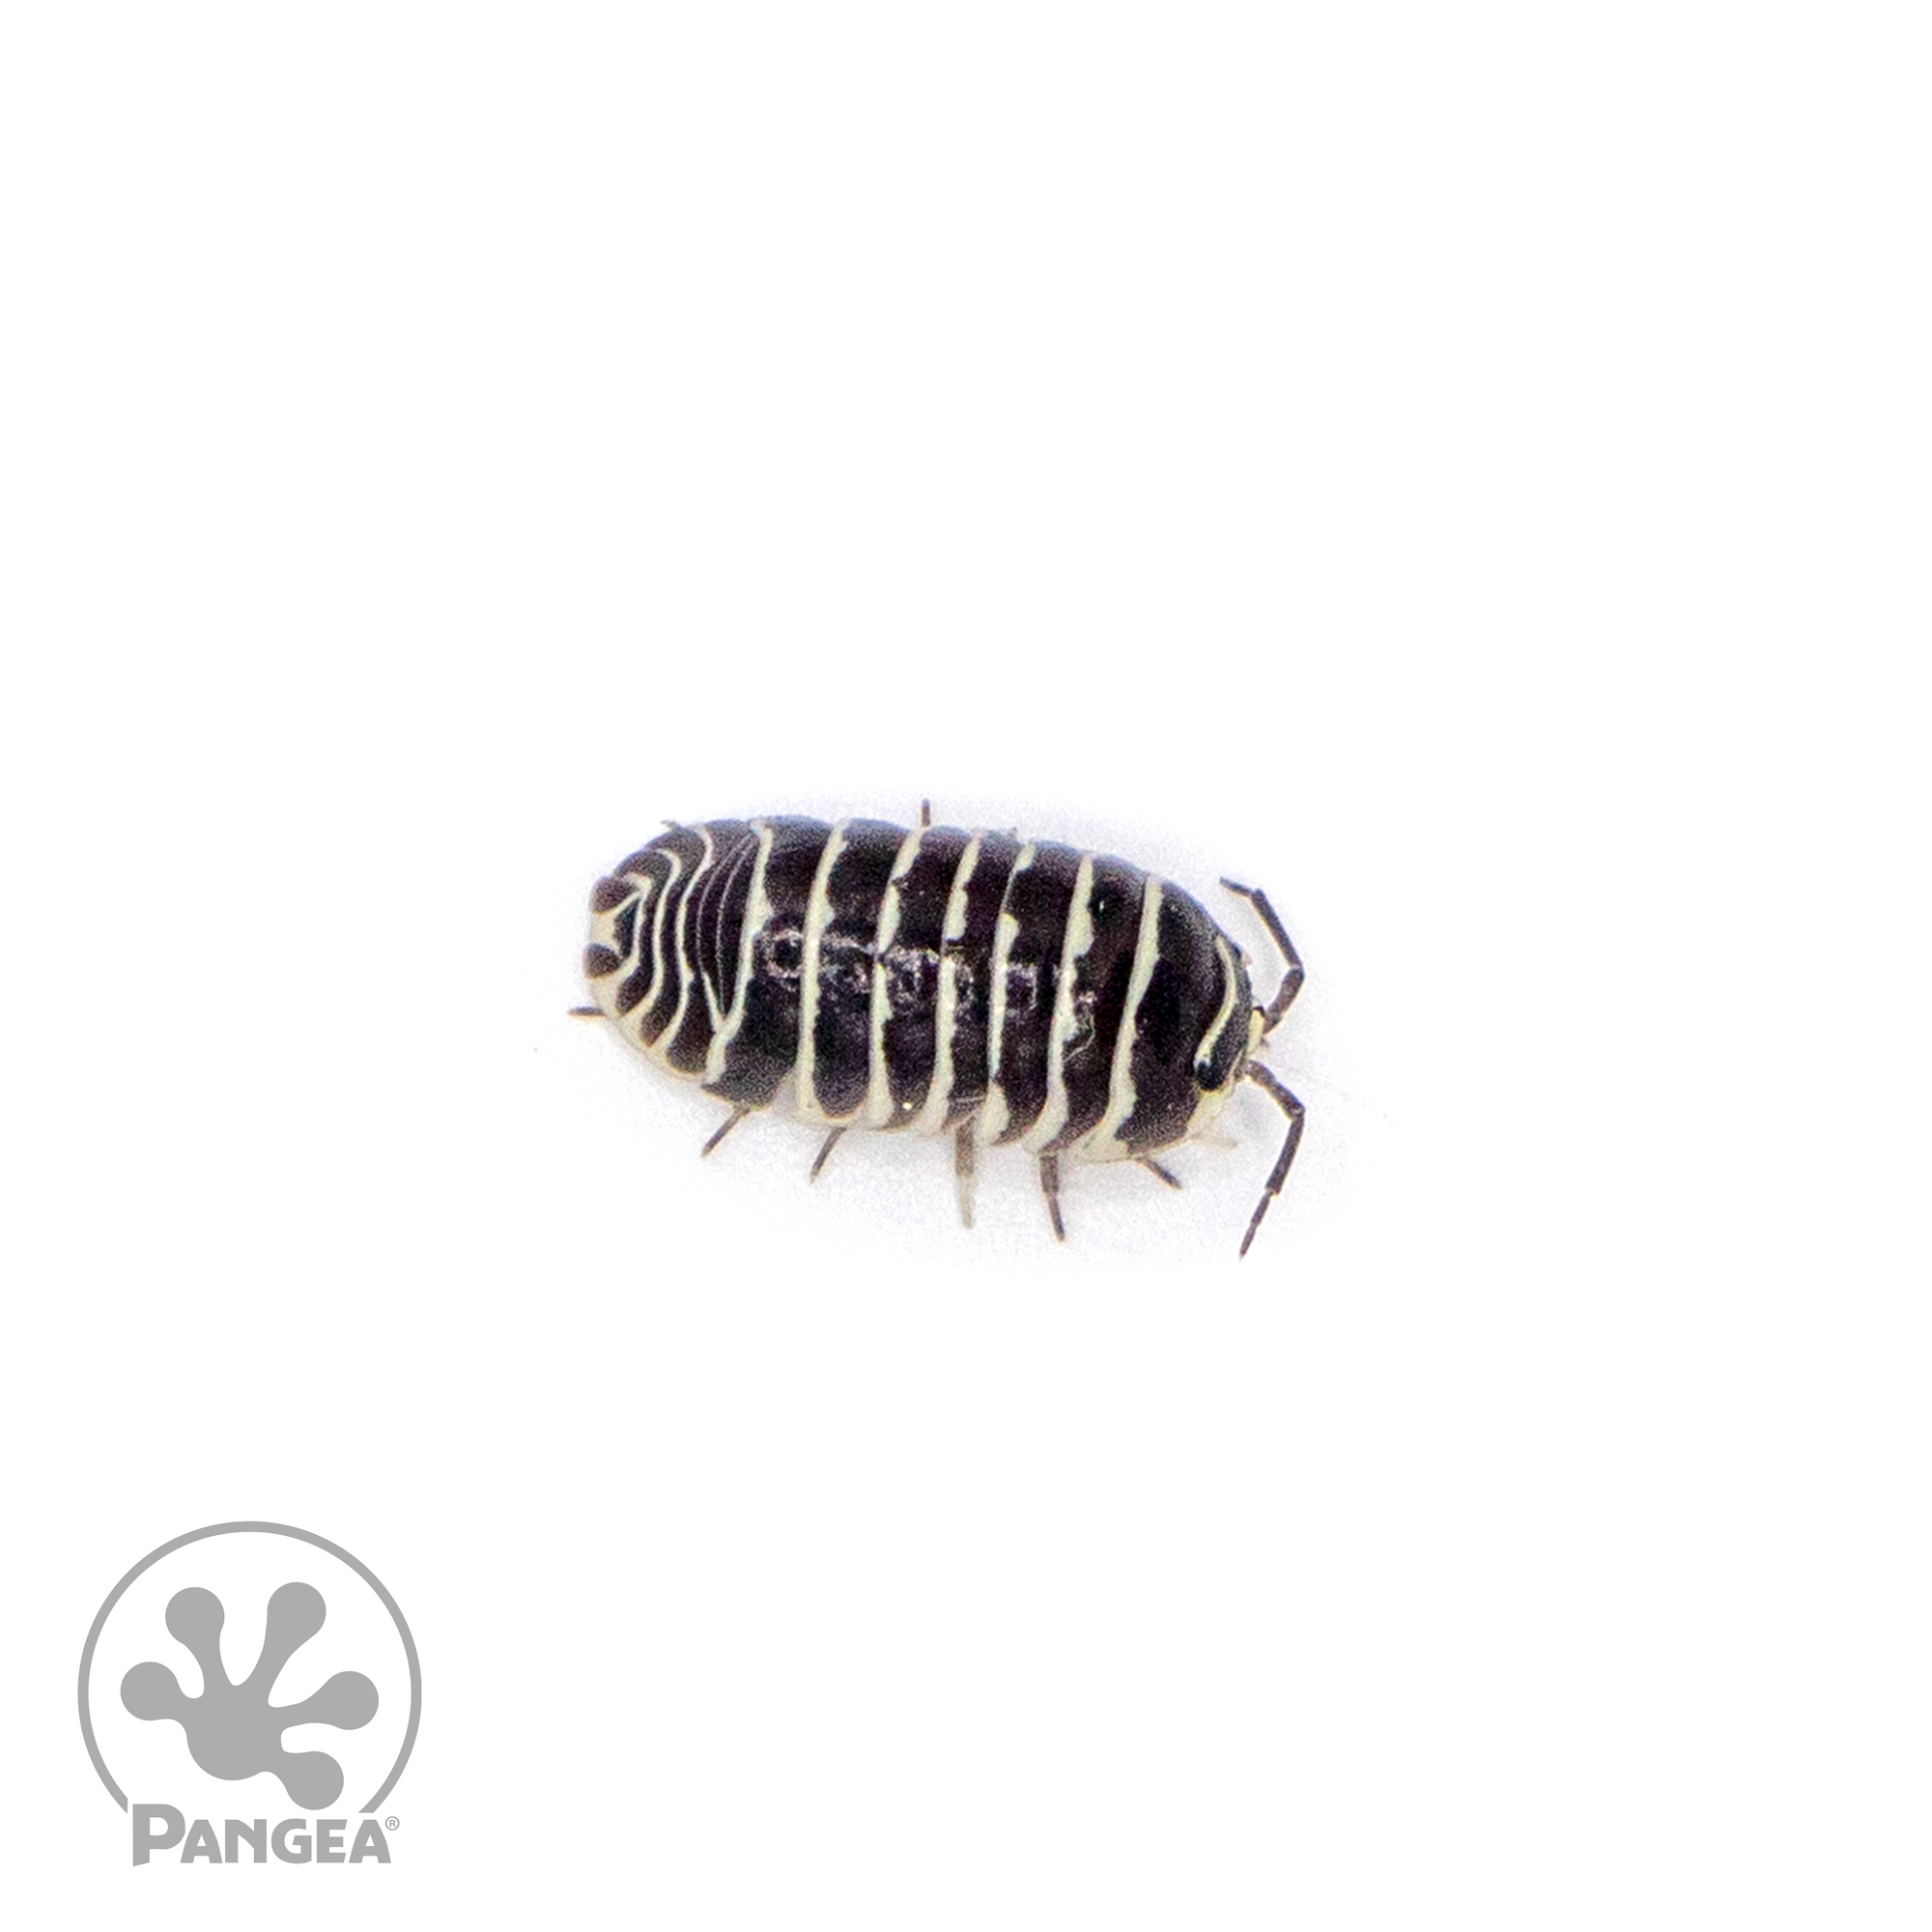 Armadillidium maculatum ‘Zebra’ Isopod